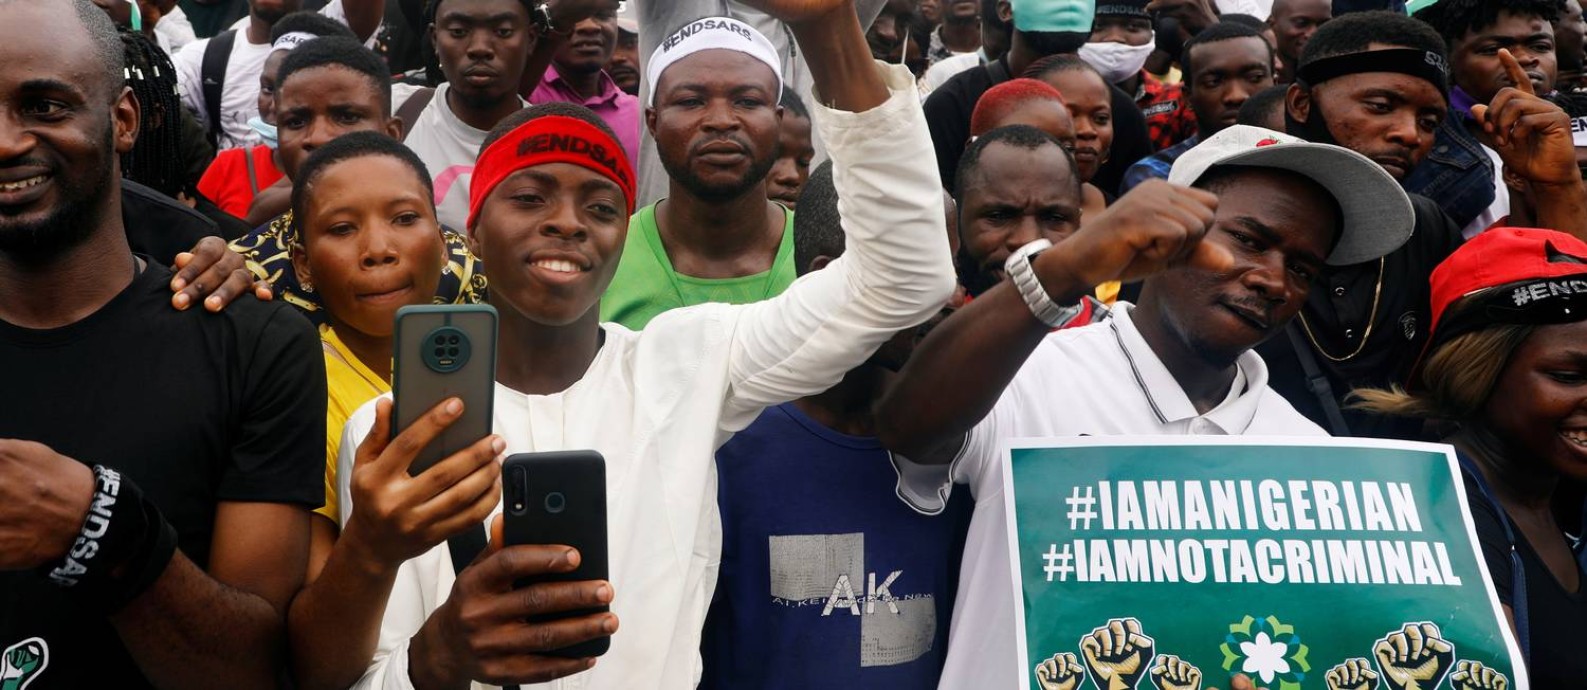 Manifestantes na cidade de Lagos, na Nigéria, em protesto que pede uma ampla reforma na polícia do país Foto: TEMILADE ADELAJA / REUTERS